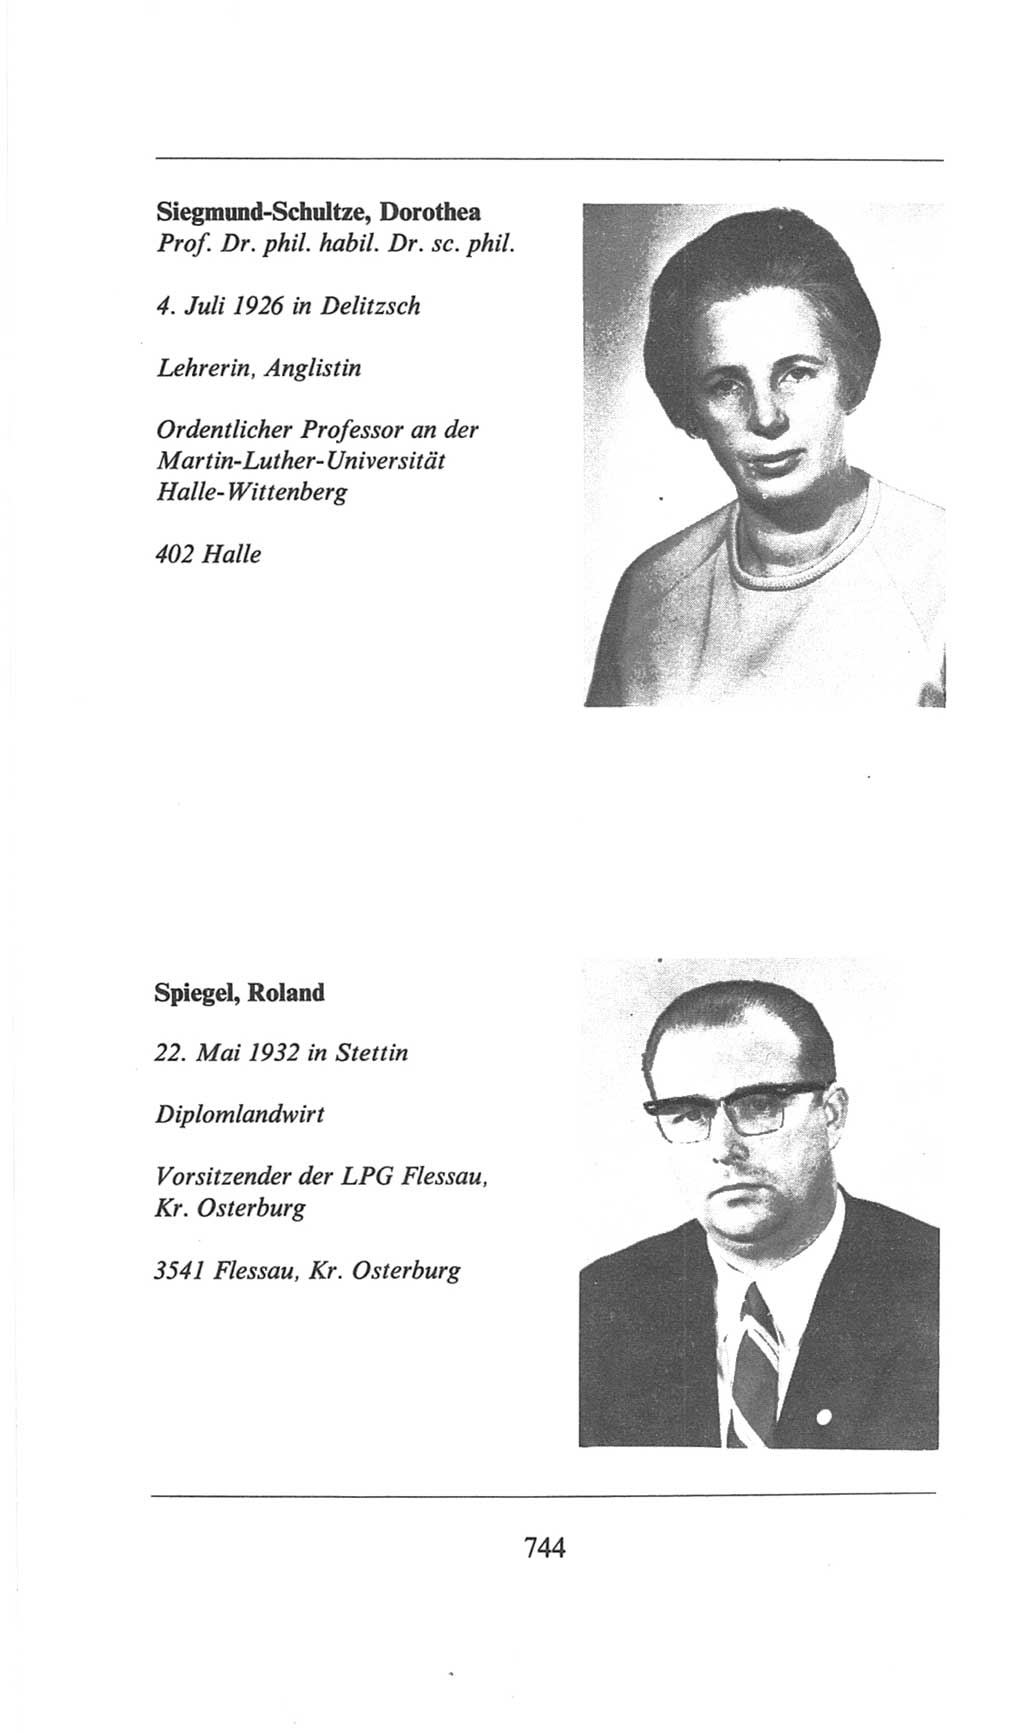 Volkskammer (VK) der Deutschen Demokratischen Republik (DDR), 6. Wahlperiode 1971-1976, Seite 744 (VK. DDR 6. WP. 1971-1976, S. 744)